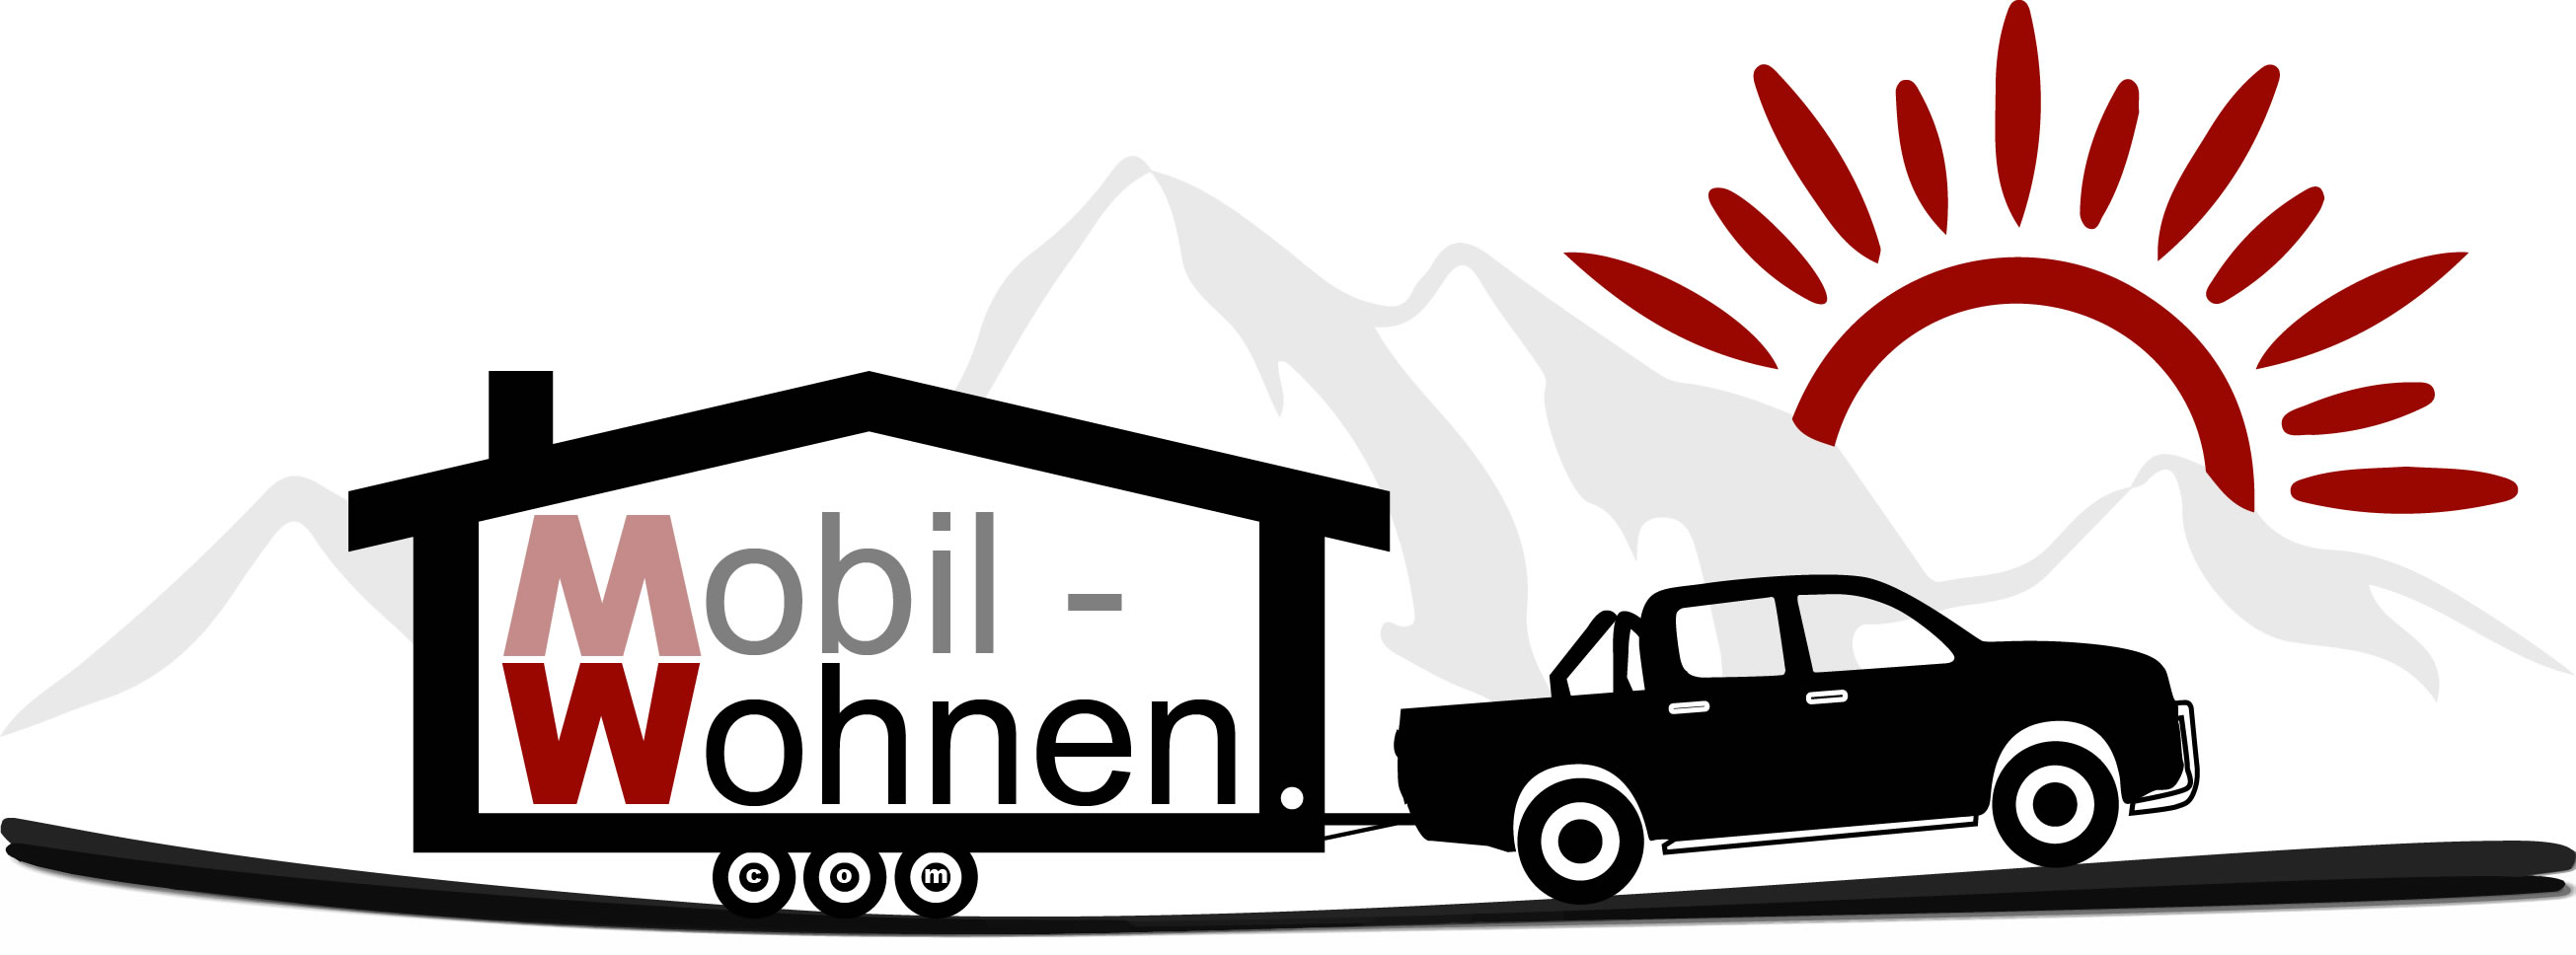 Mobil-Wohnen Logo